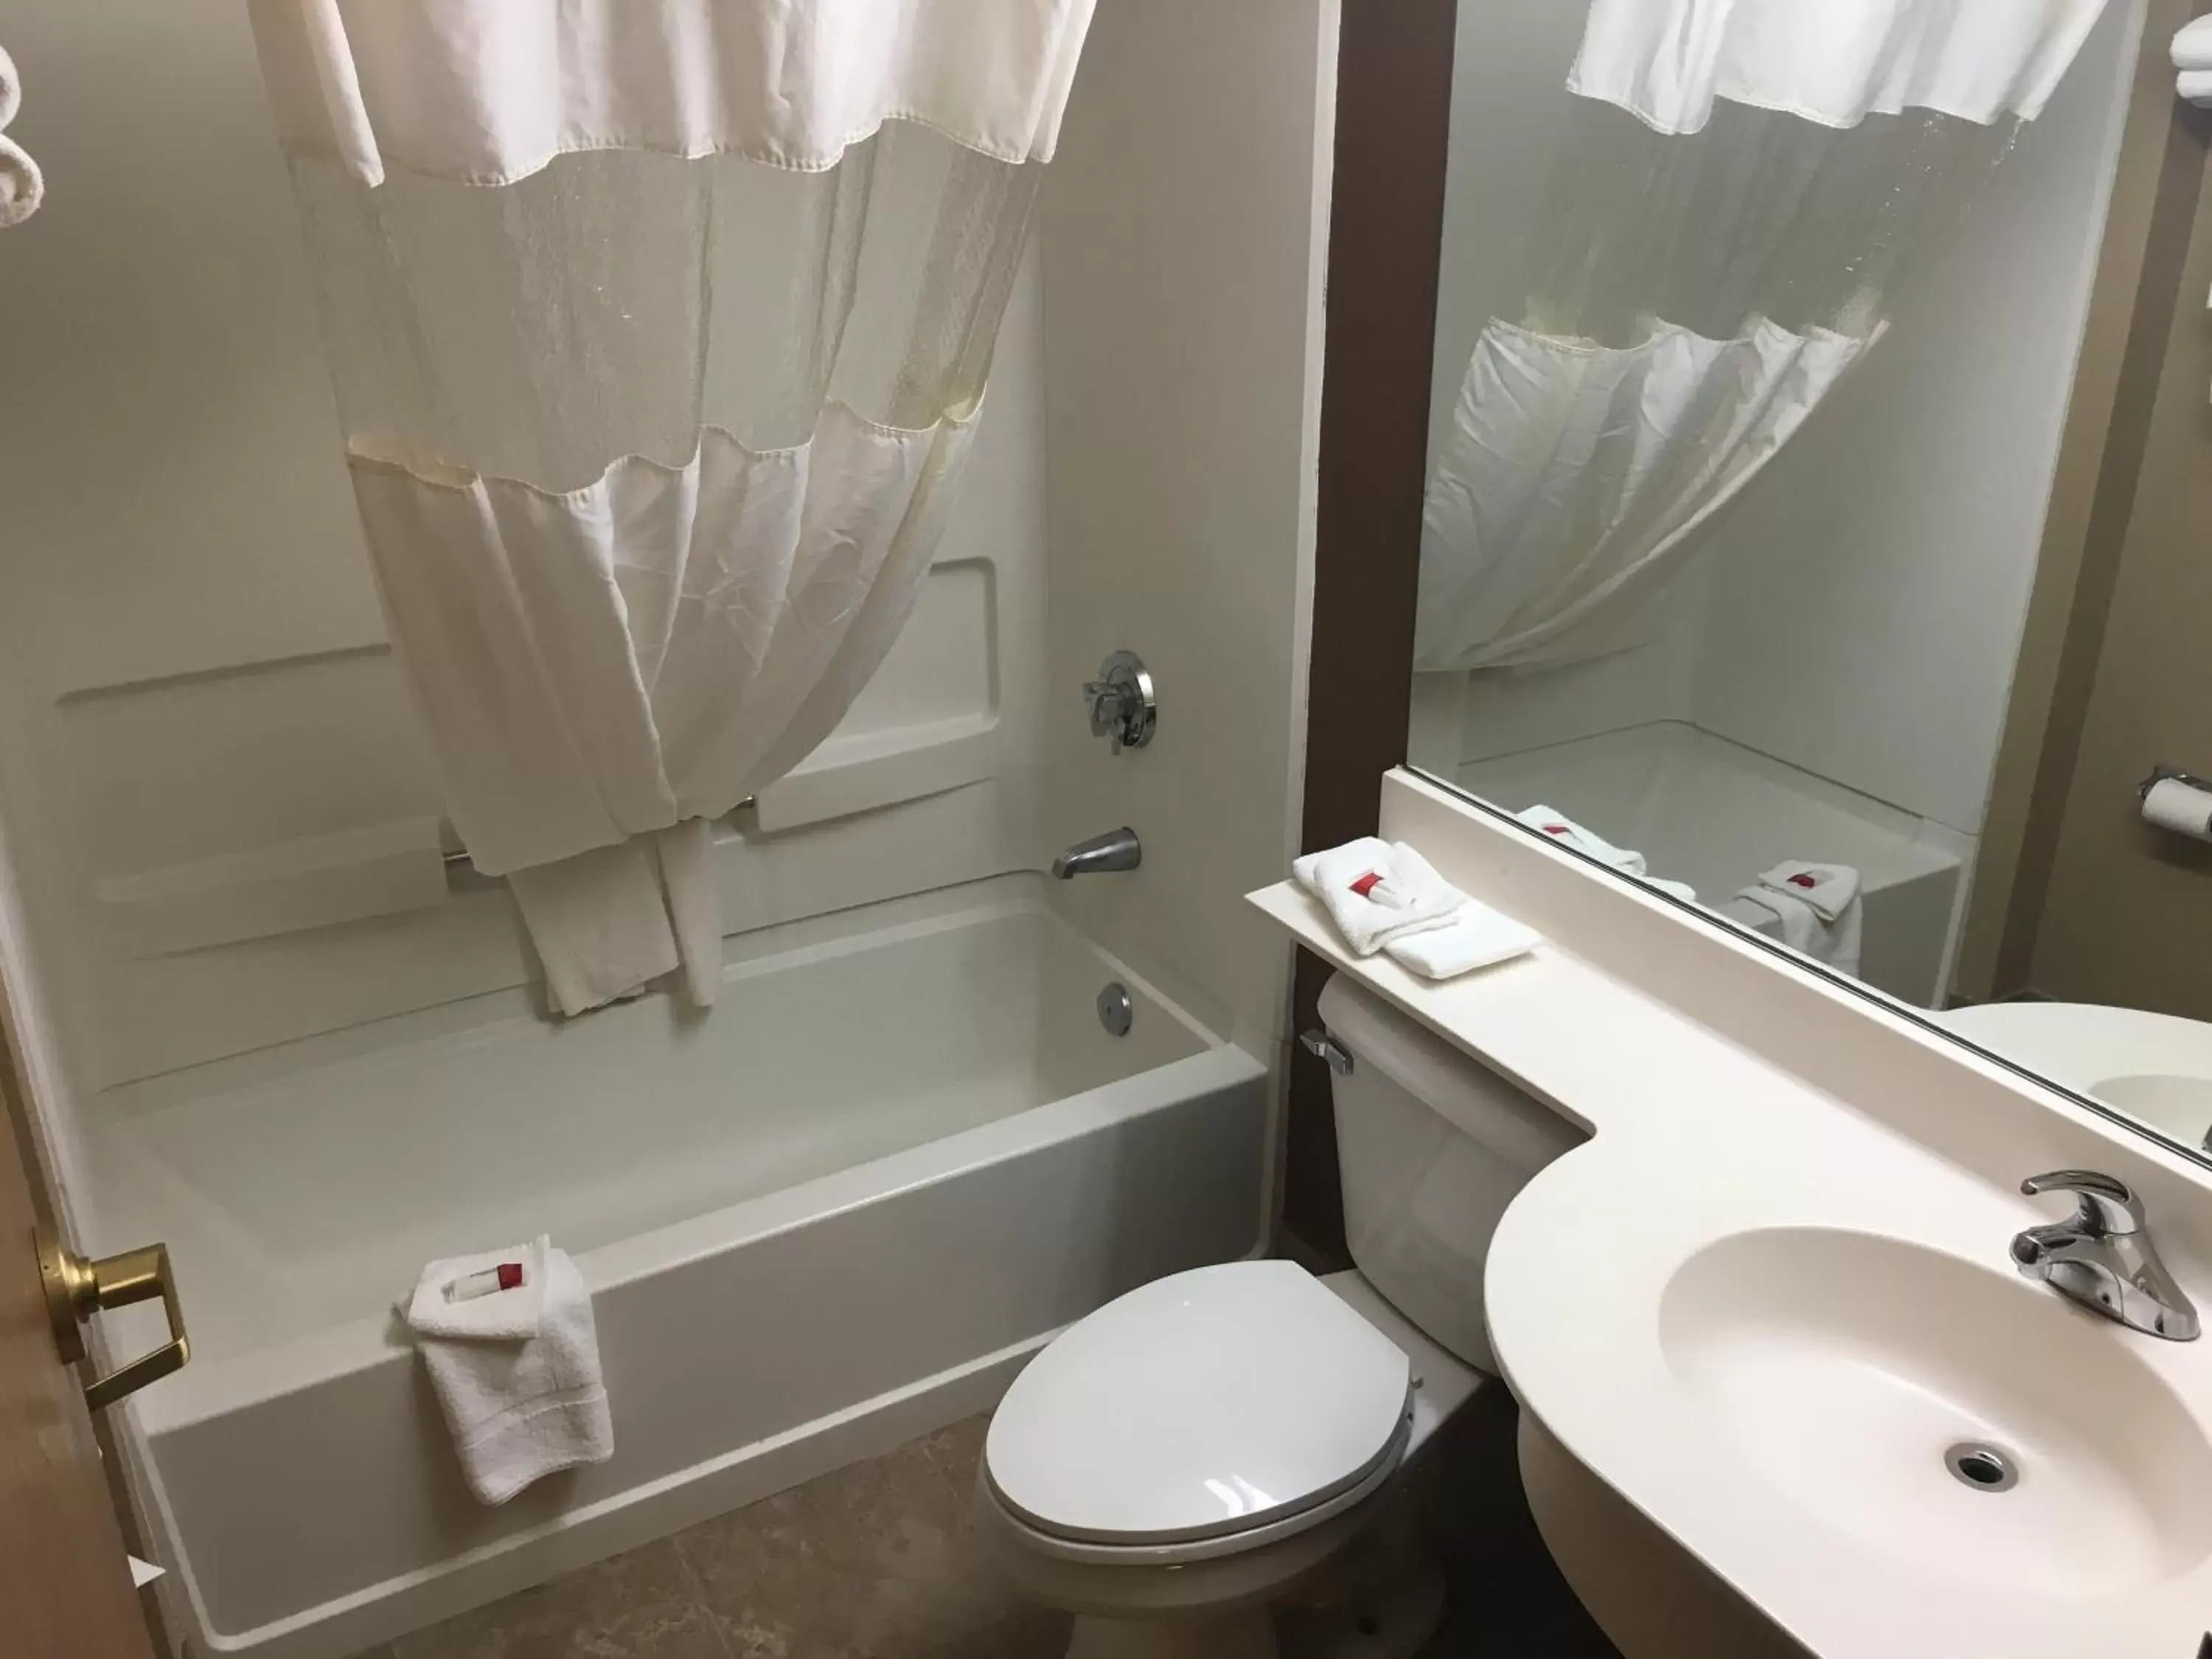 Bathroom in Microtel Inn & Suites by Wyndham Mason